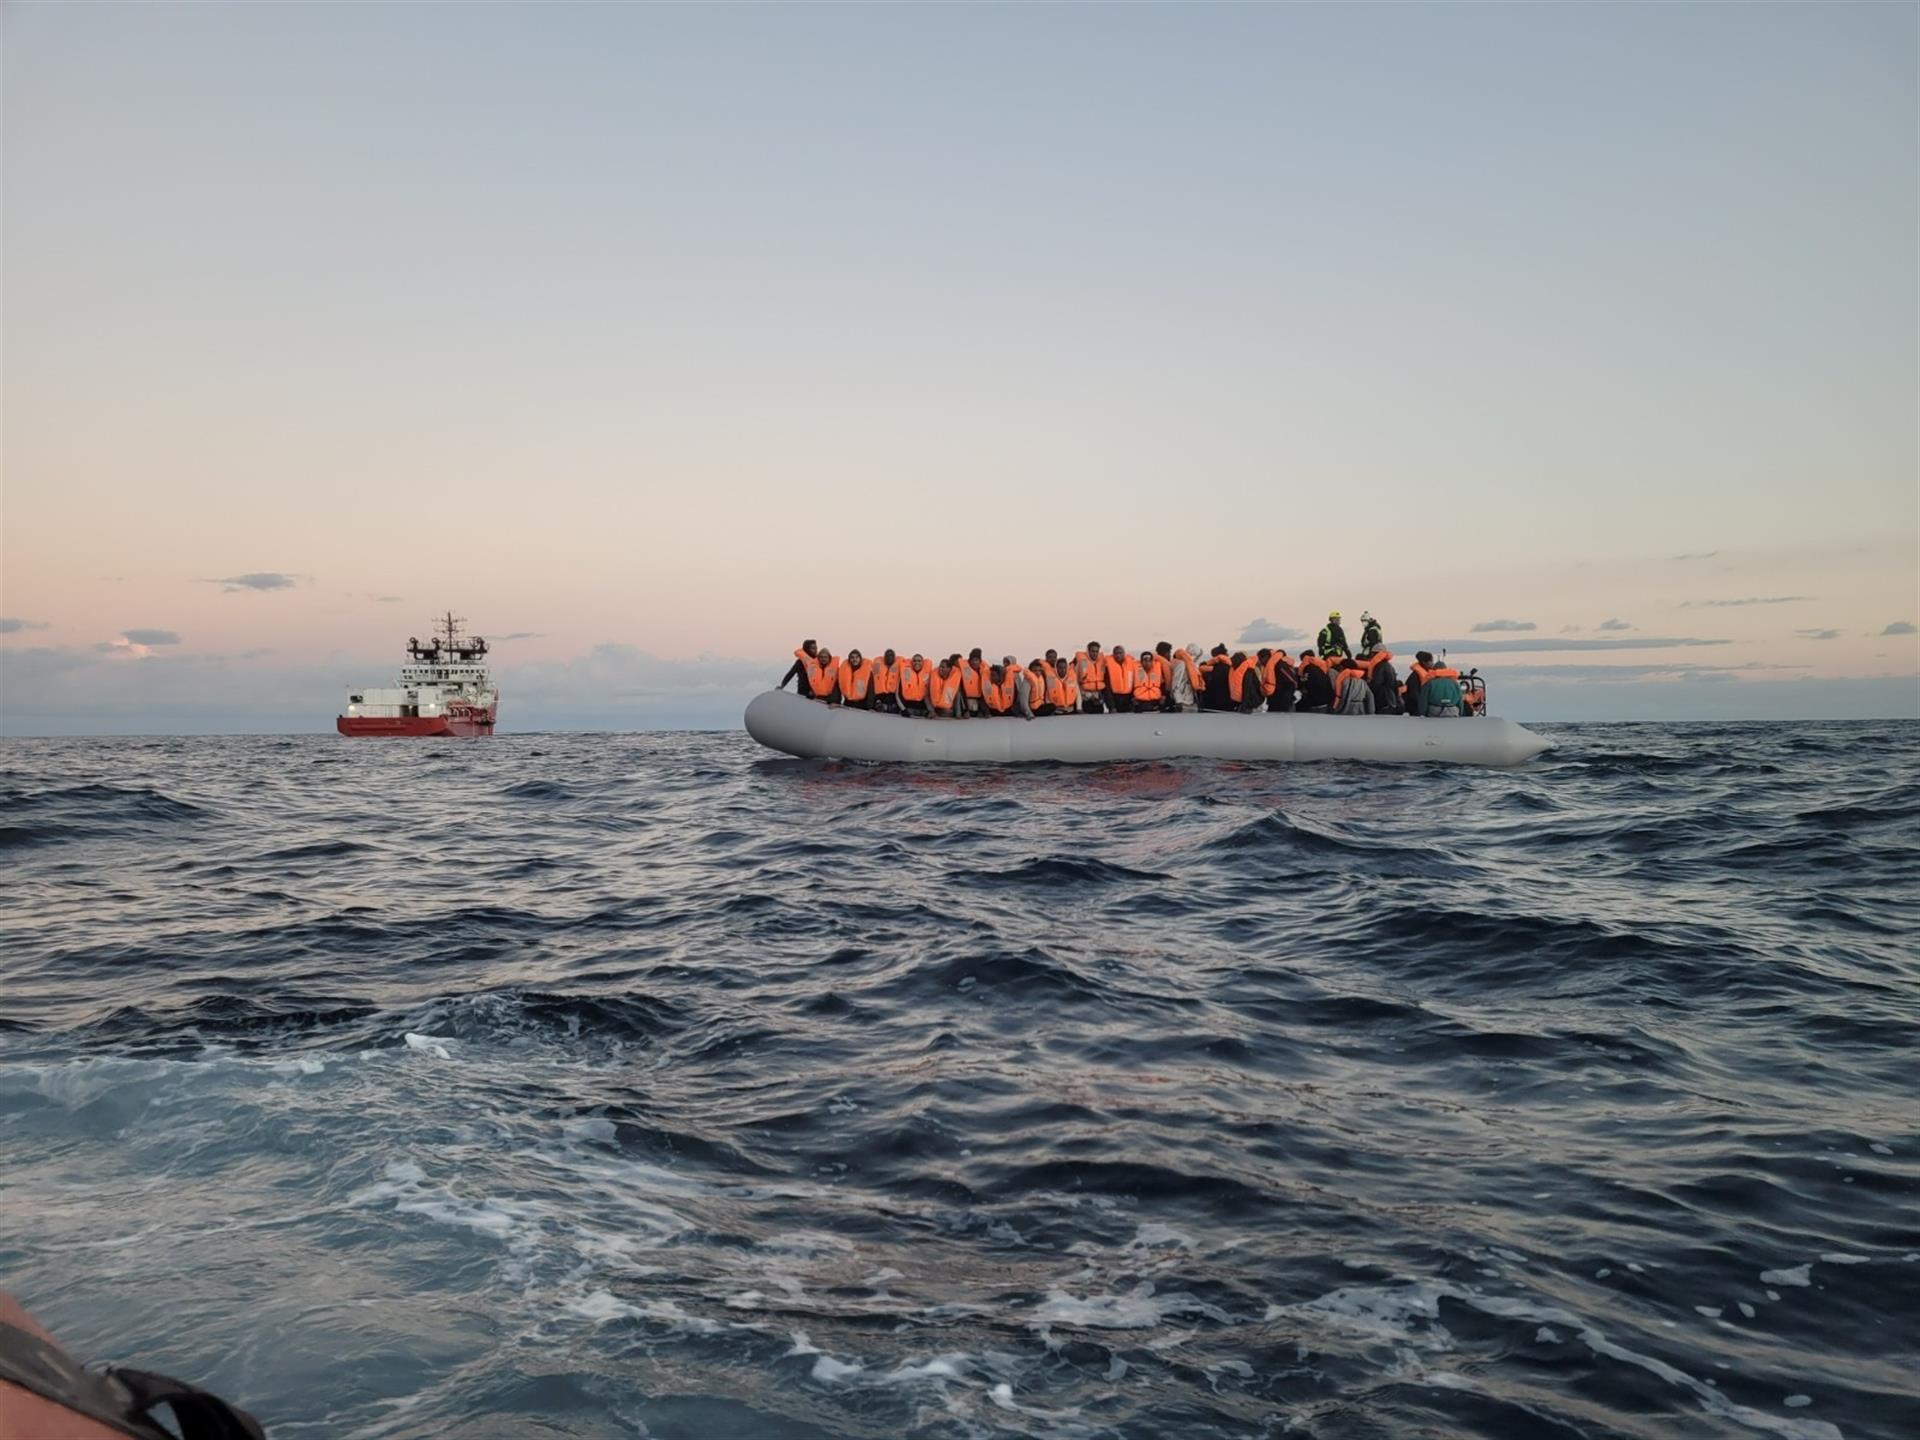 En lo que va de 2021 han sido interceptadas 31.500 personas intentando llegar de forma irregular a Europa desde Libia.